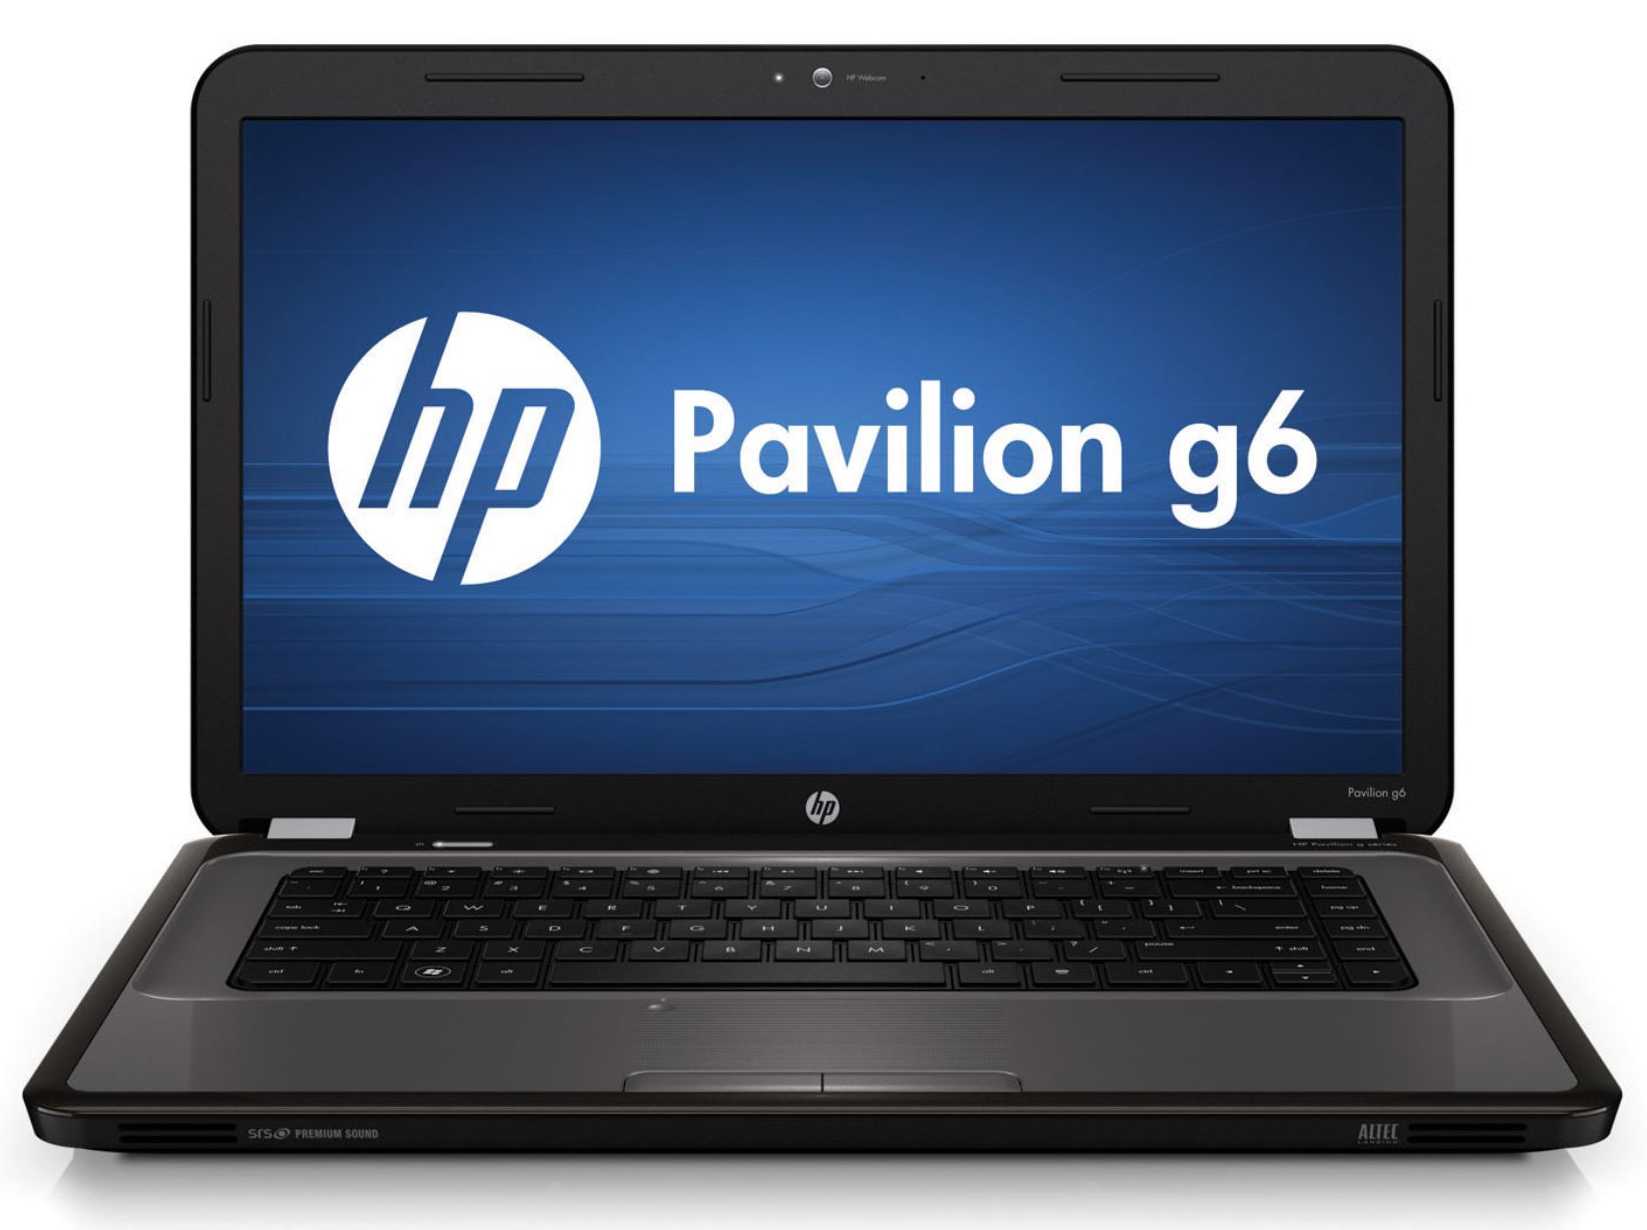 Ноутбук HP Pavilion g6-2290sr (C6S36EA) - подробные характеристики обзоры видео фото Цены в интернет-магазинах где можно купить ноутбук HP Pavilion g6-2290sr (C6S36EA)